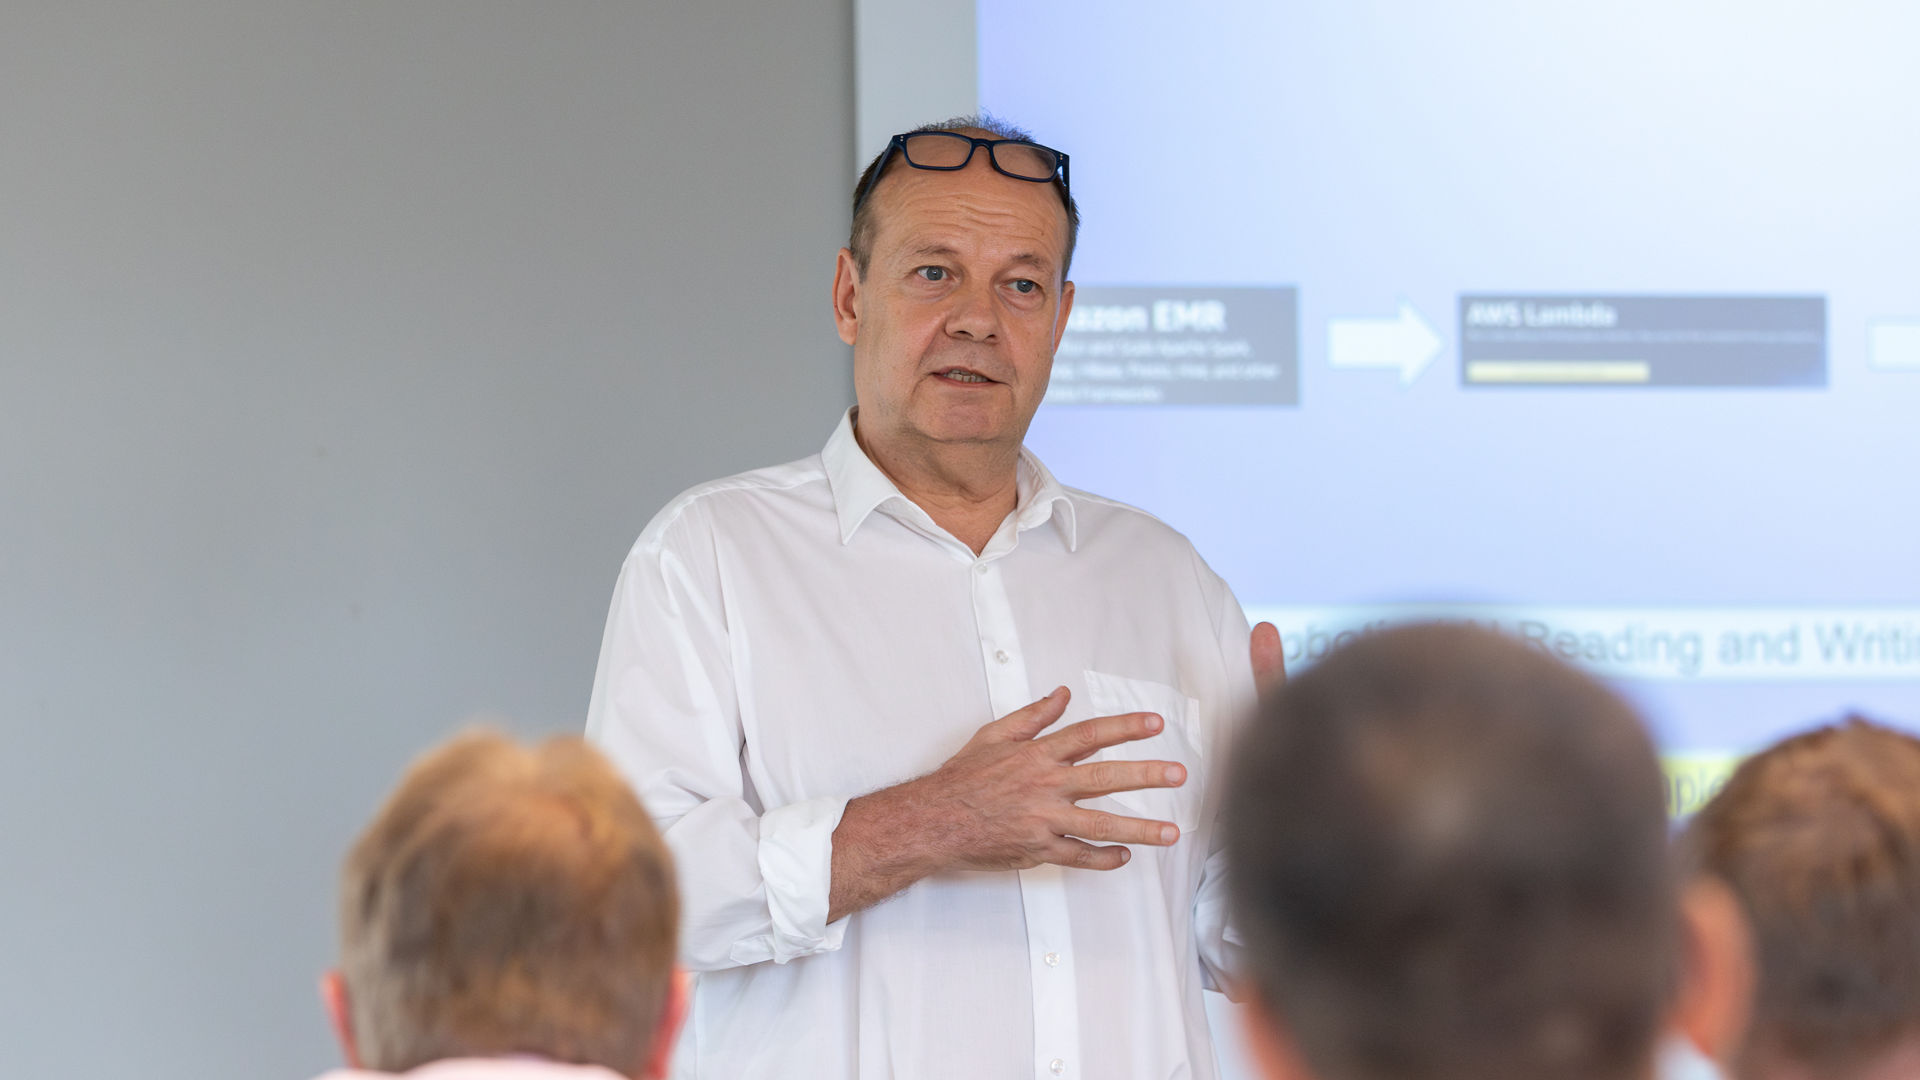 Prof. Dr. Rüdiger Buchkremer, wissenschaftlicher Direktor des Instituts für IT-Management & Digitalisierung (ifid) der FOM Hochschule. 